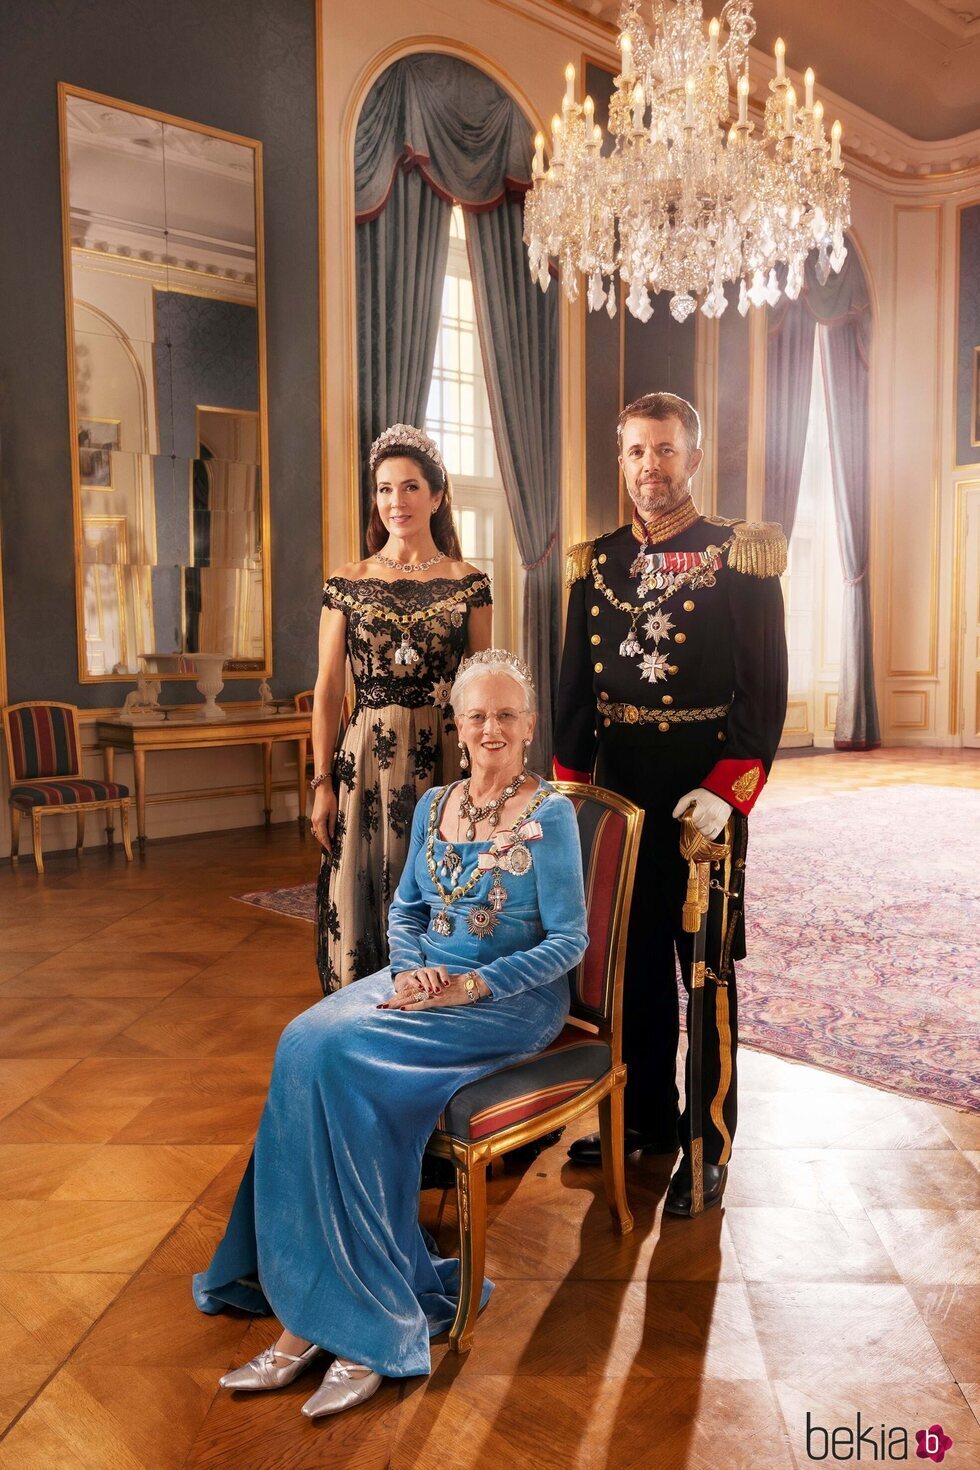 Foto oficial de Margarita de Dinamarca, Federico y Mary de Dinamarca por el 50 aniversario de reinado de Margarita de Dinamarca